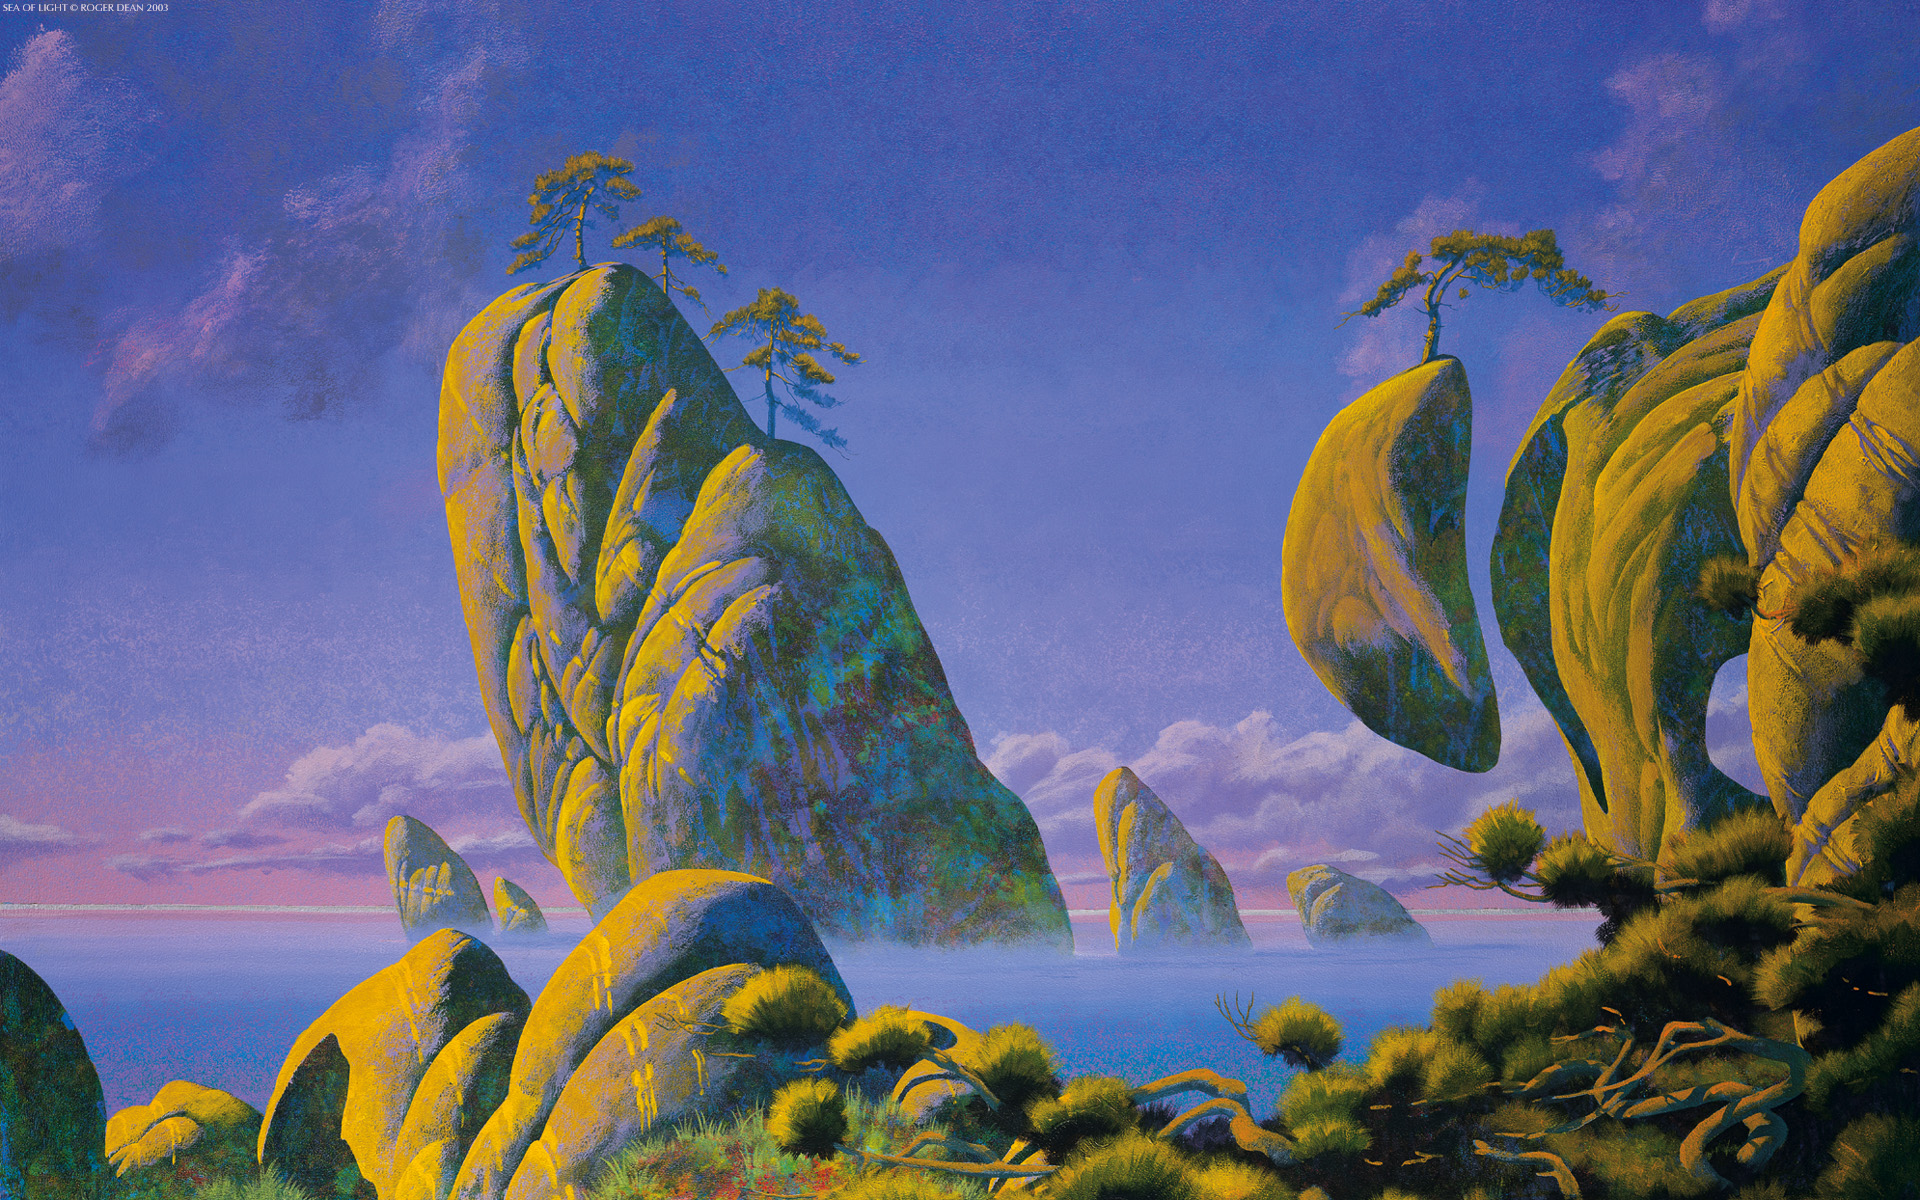 Roger Dean's surreal landscape artwork for a HD desktop wallpaper.